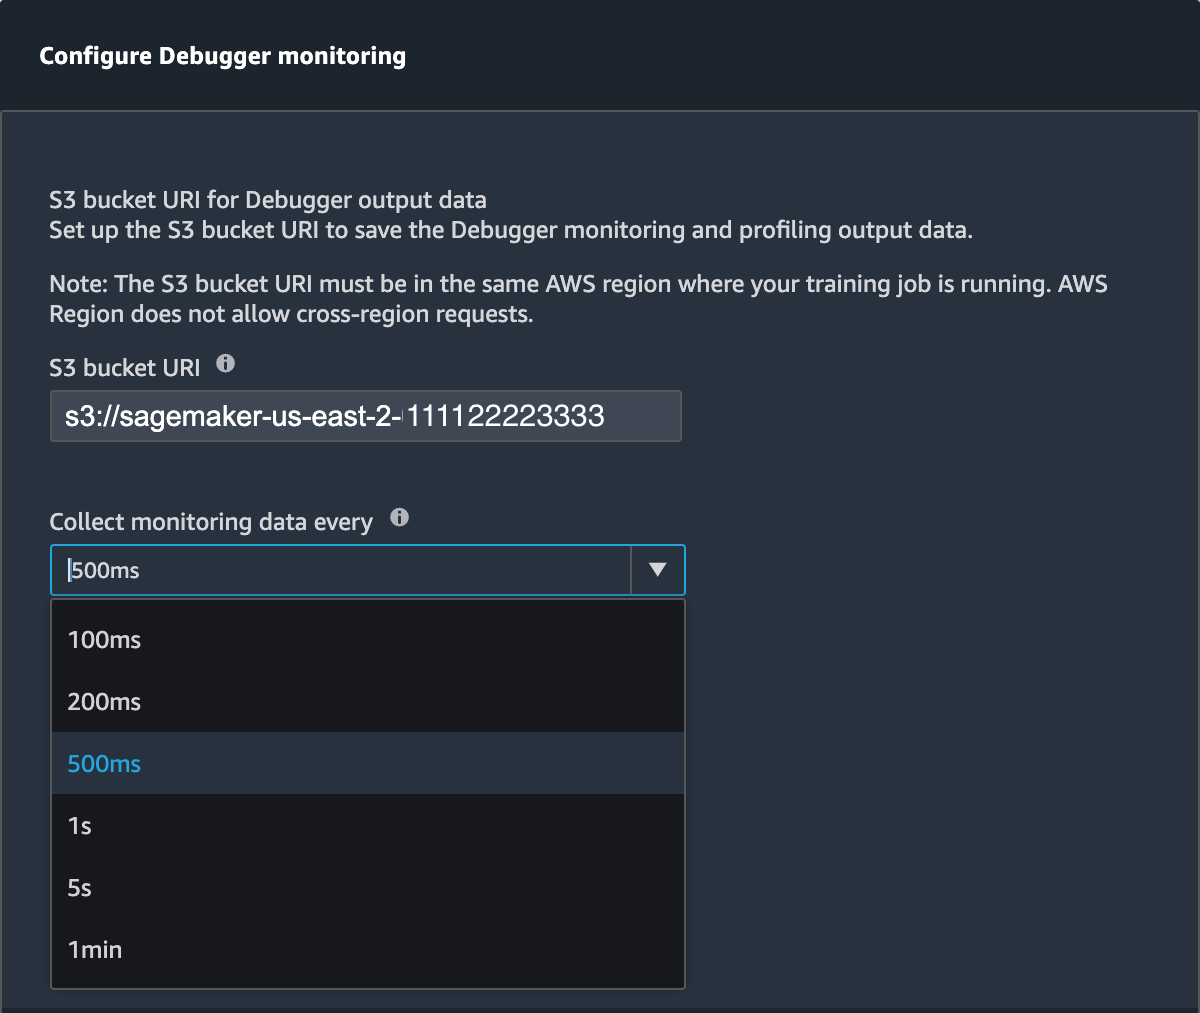 A janela pop-up para definir as configurações de monitoramento do Debugger